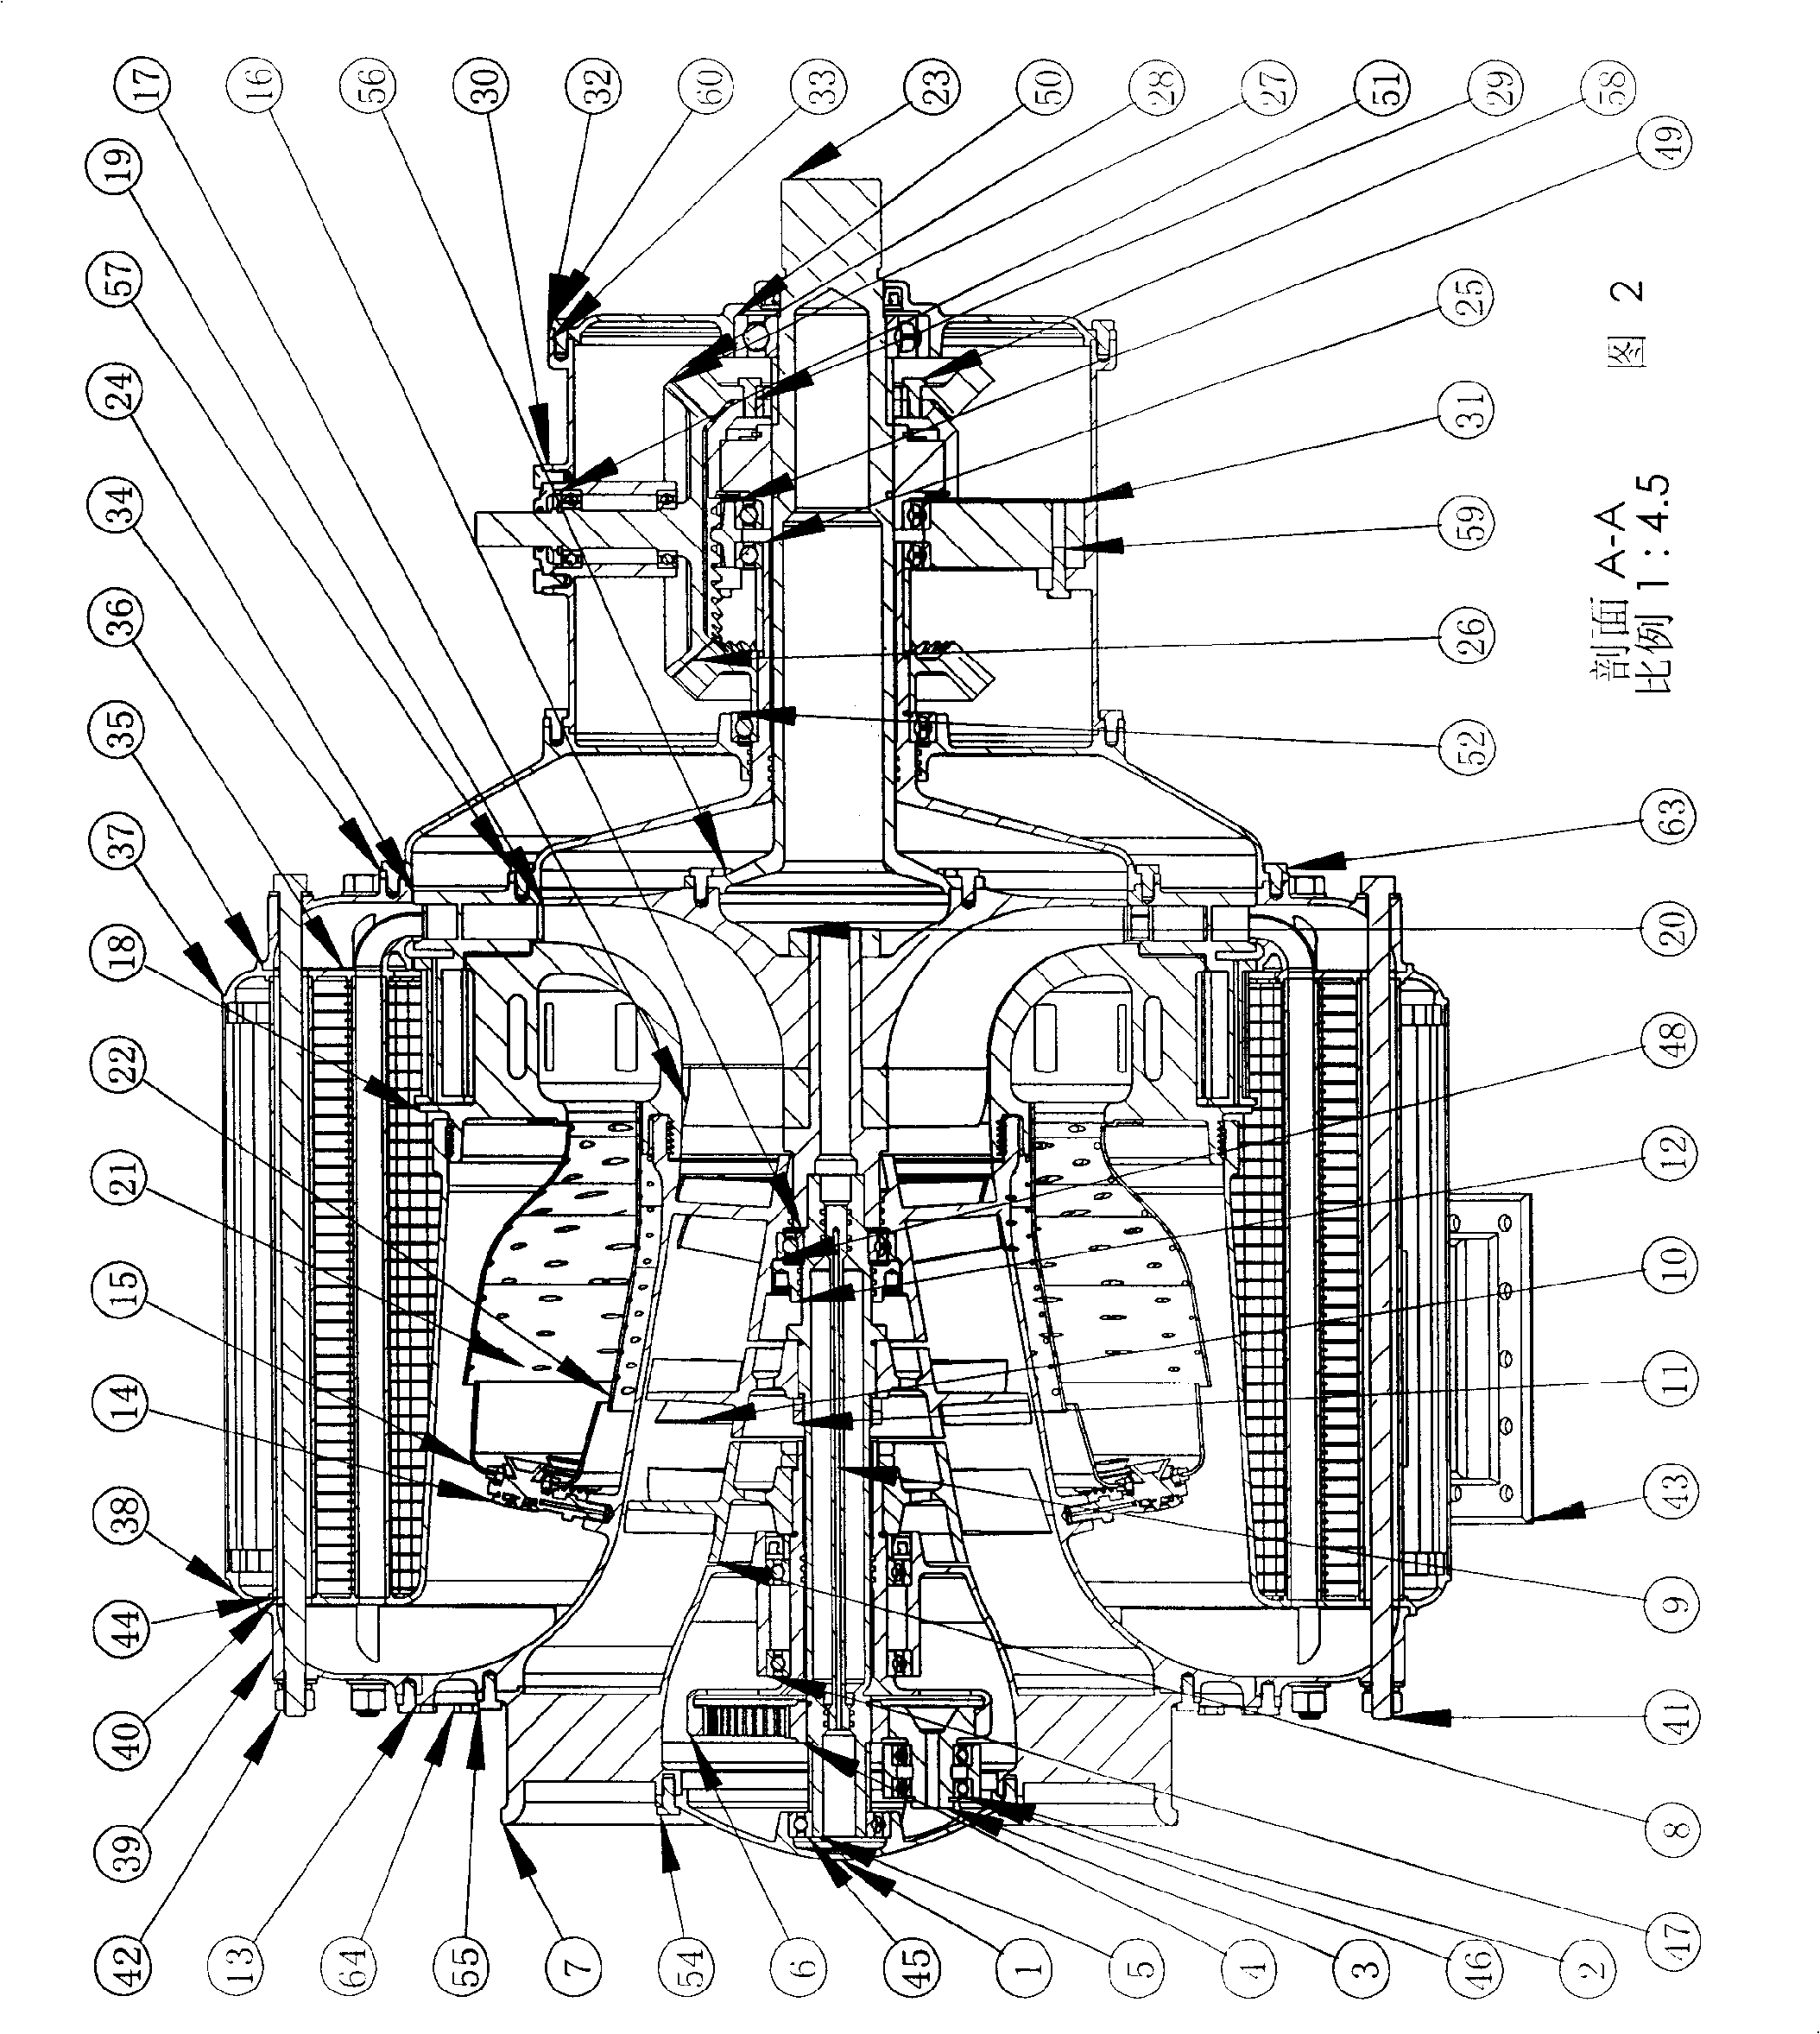 Contrarotating rotary spraying engine